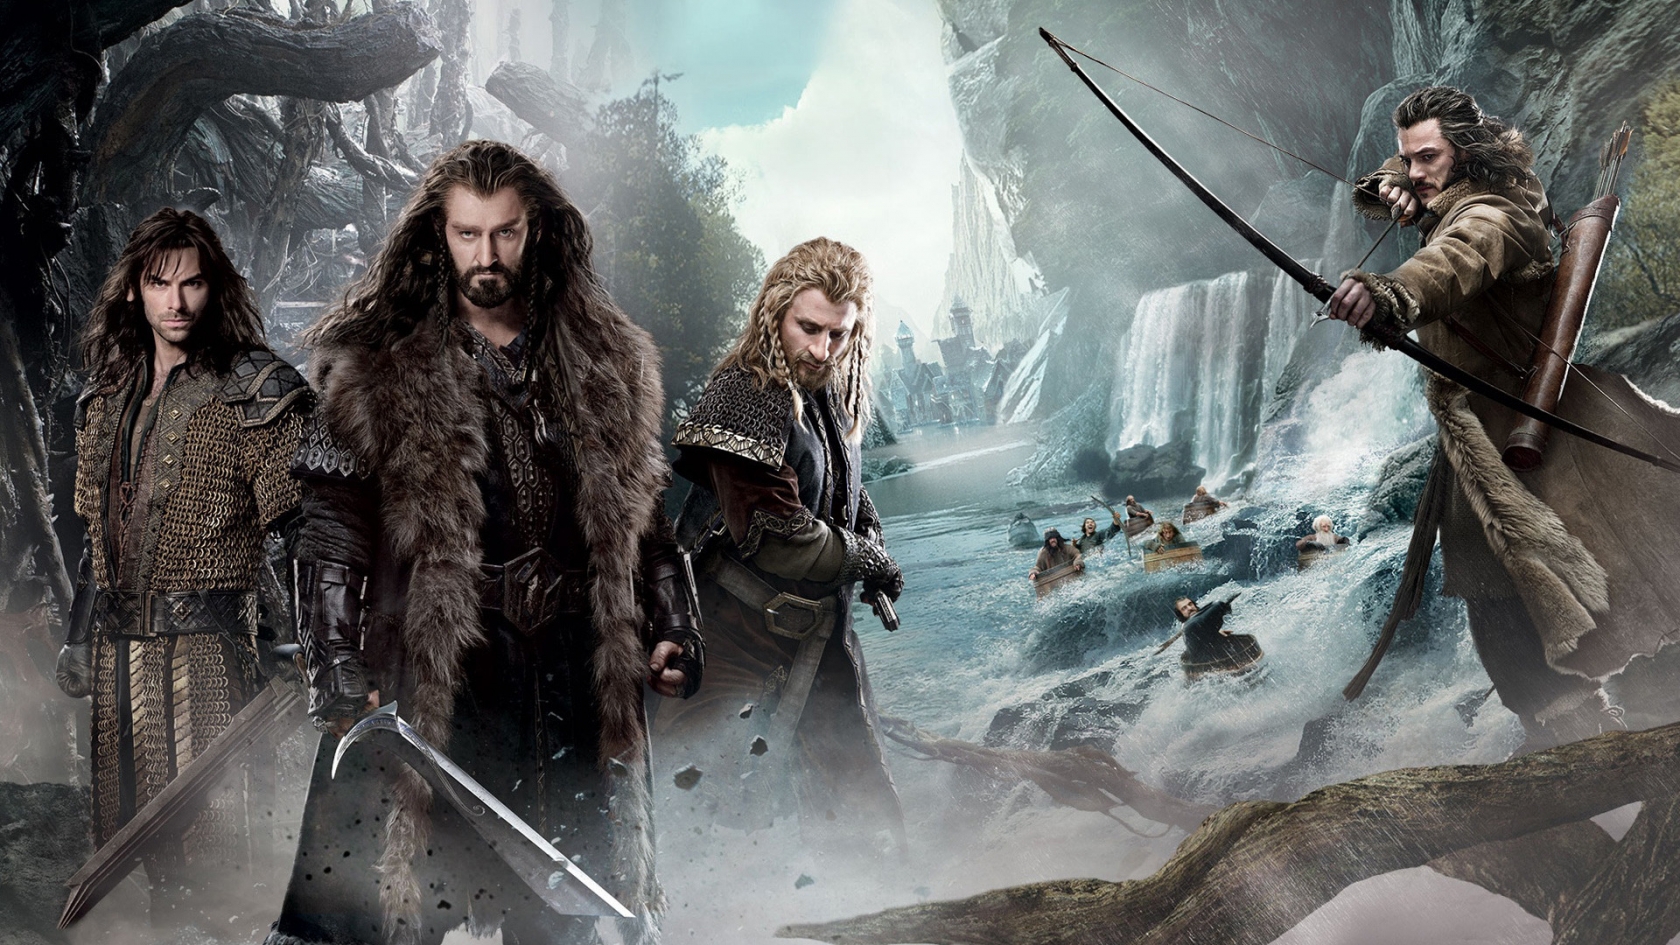 The Hobbit 2013 for 1680 x 945 HDTV resolution